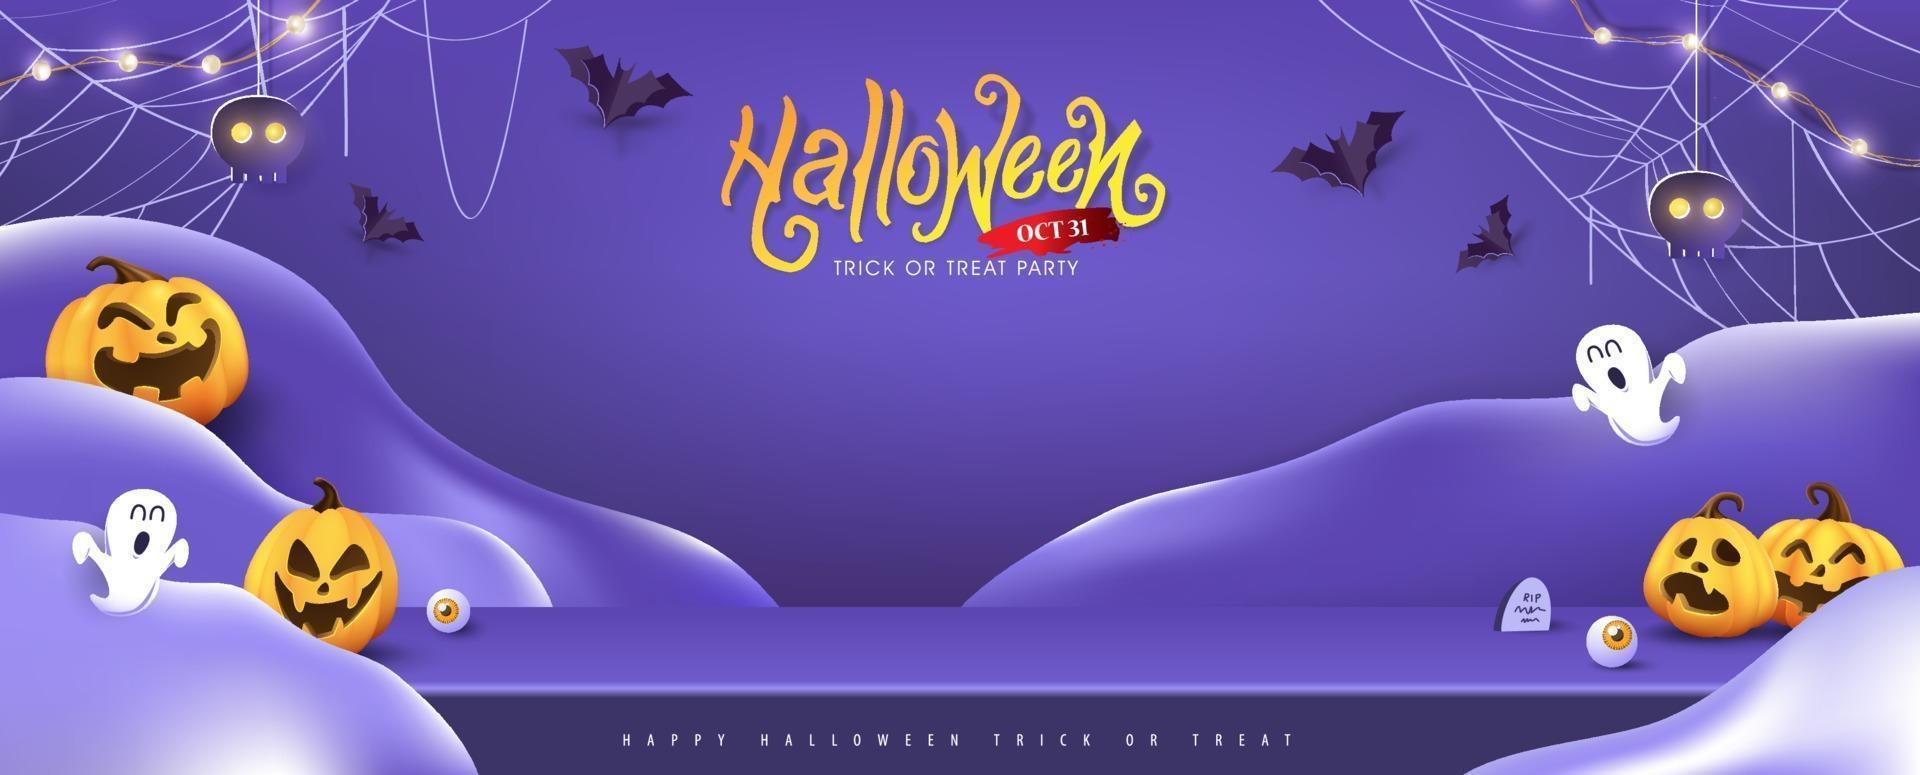 Halloween-achtergrondontwerp met productweergave en feestelijke elementen vector